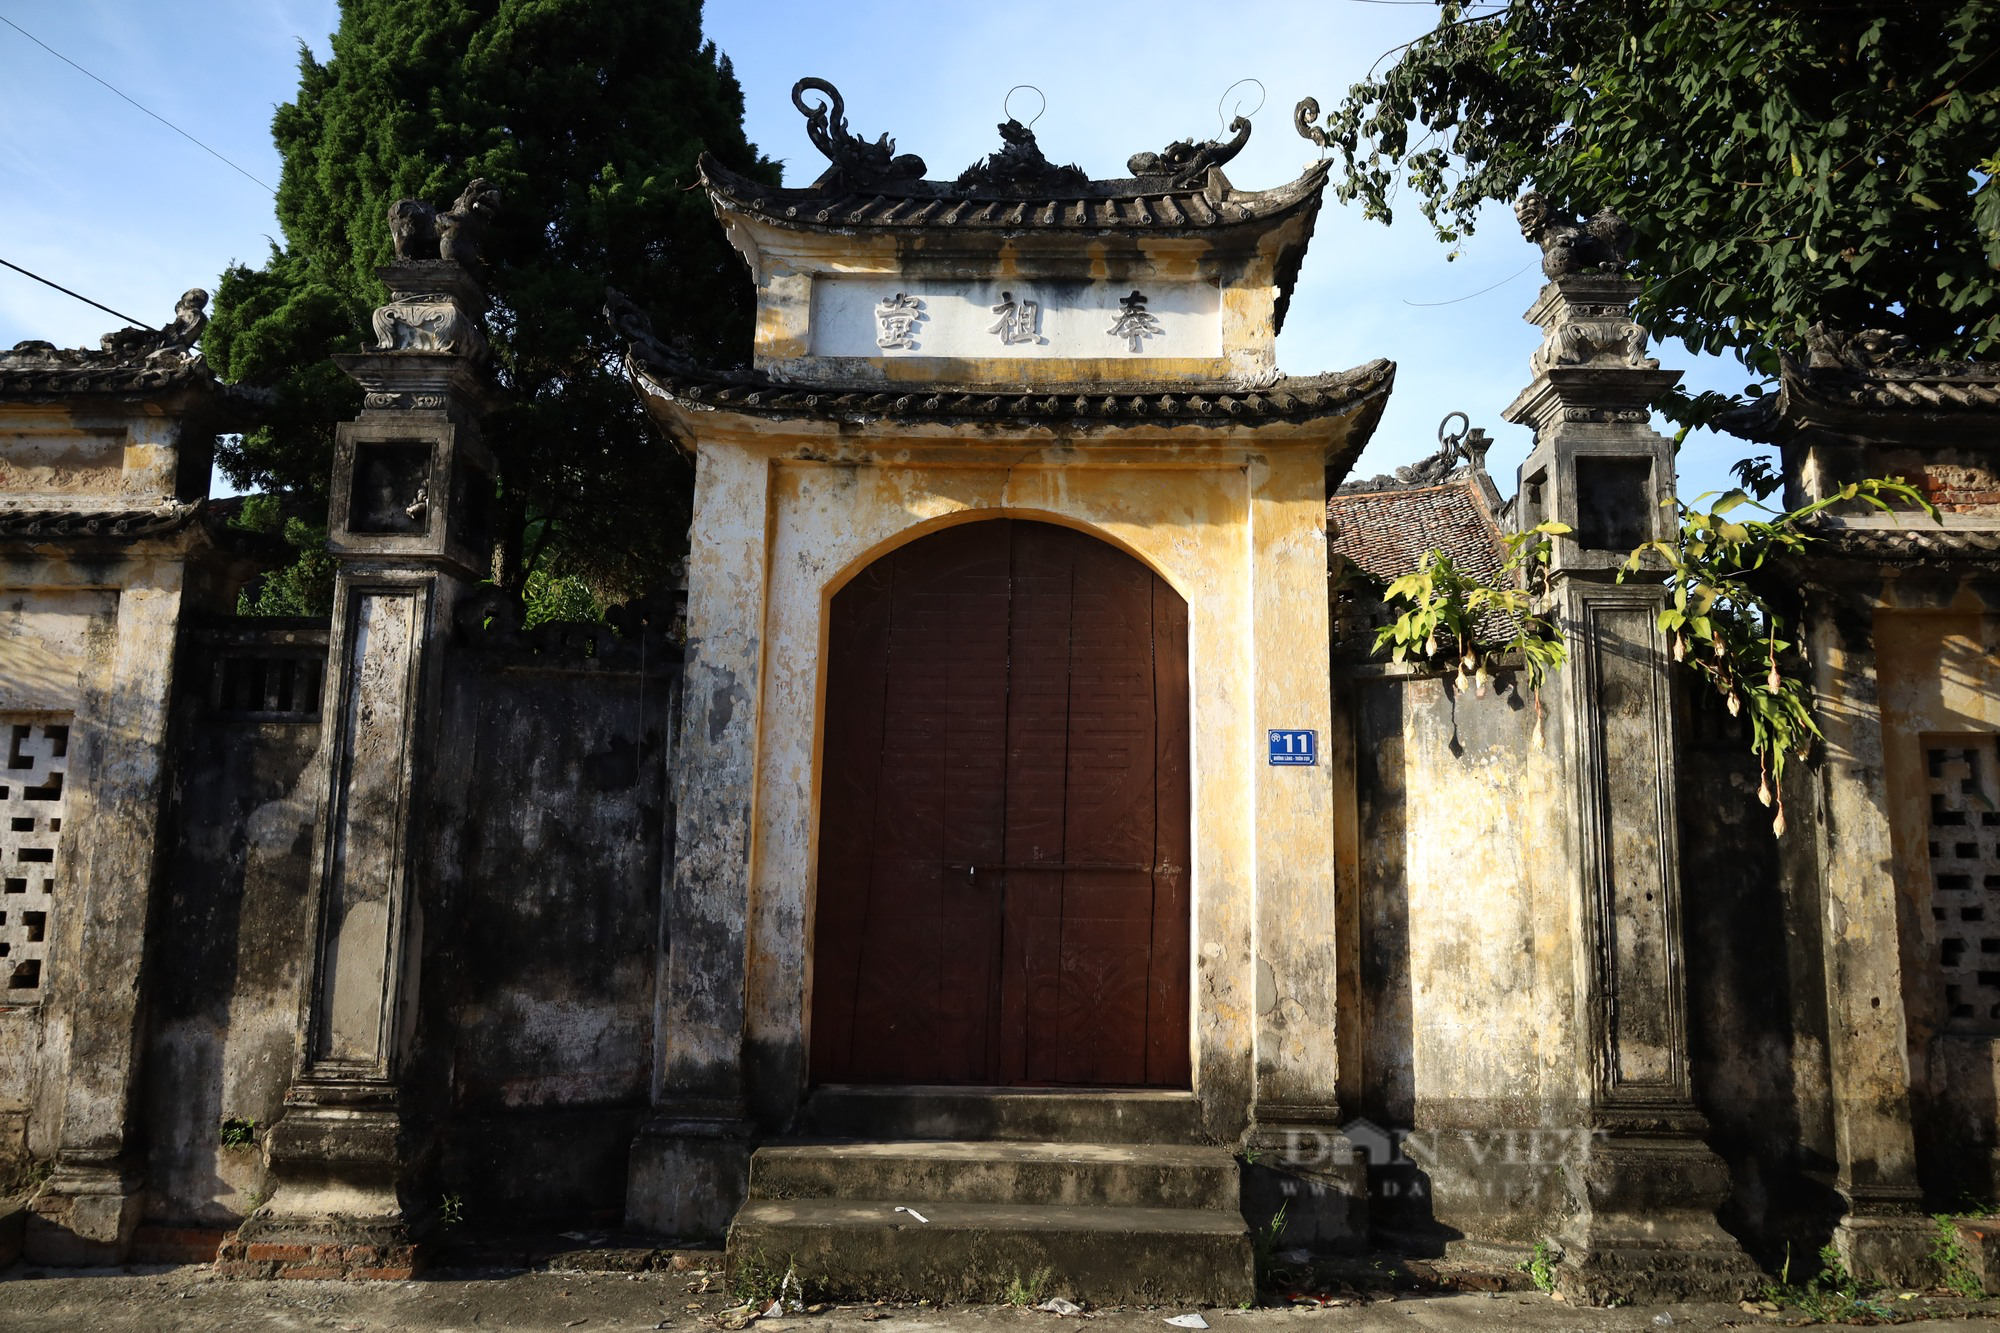 Độc đáo kiến trúc pháp cổ ở ngôi làng Cựu 500 năm tuổi ngoại thành Hà Nội - Ảnh 5.